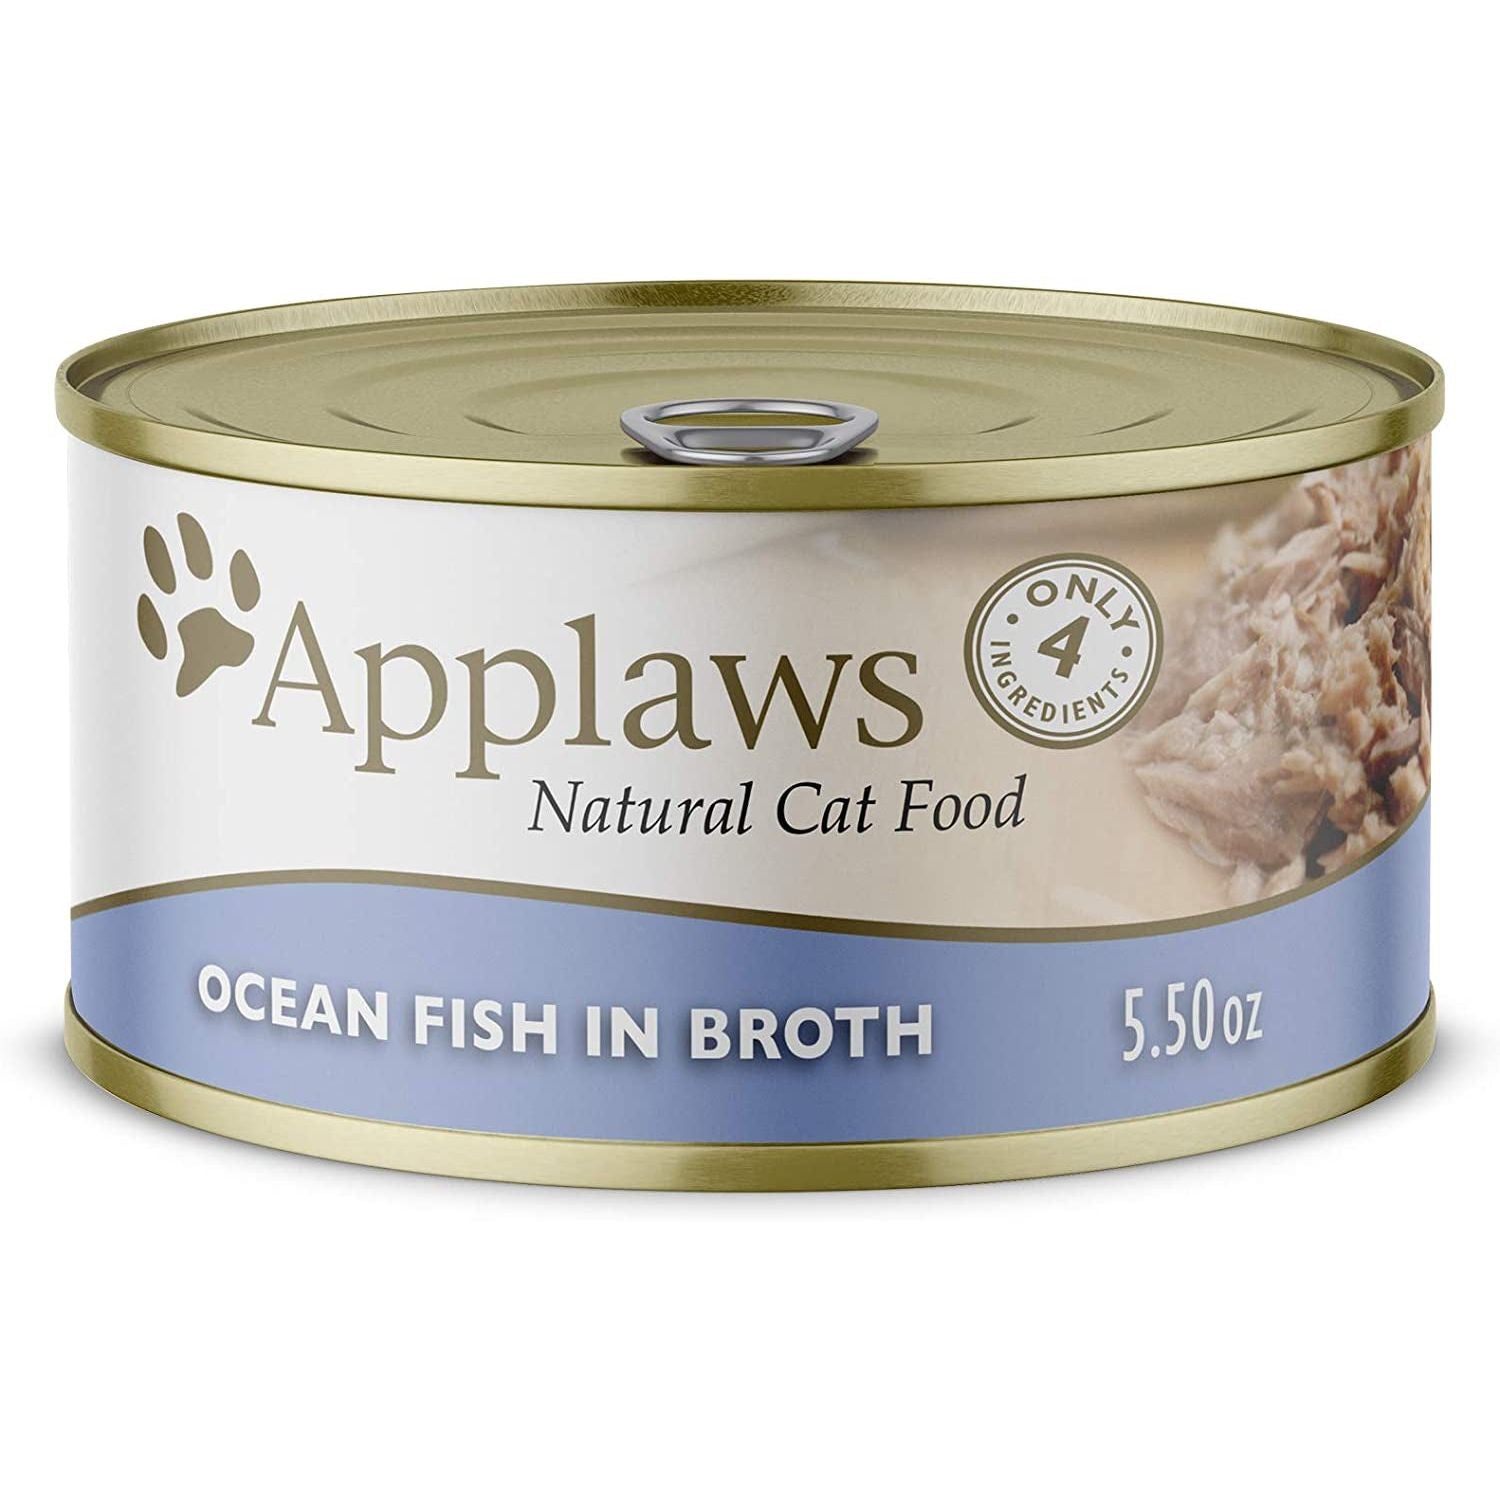 Ocean Fish in Broth Cat Food